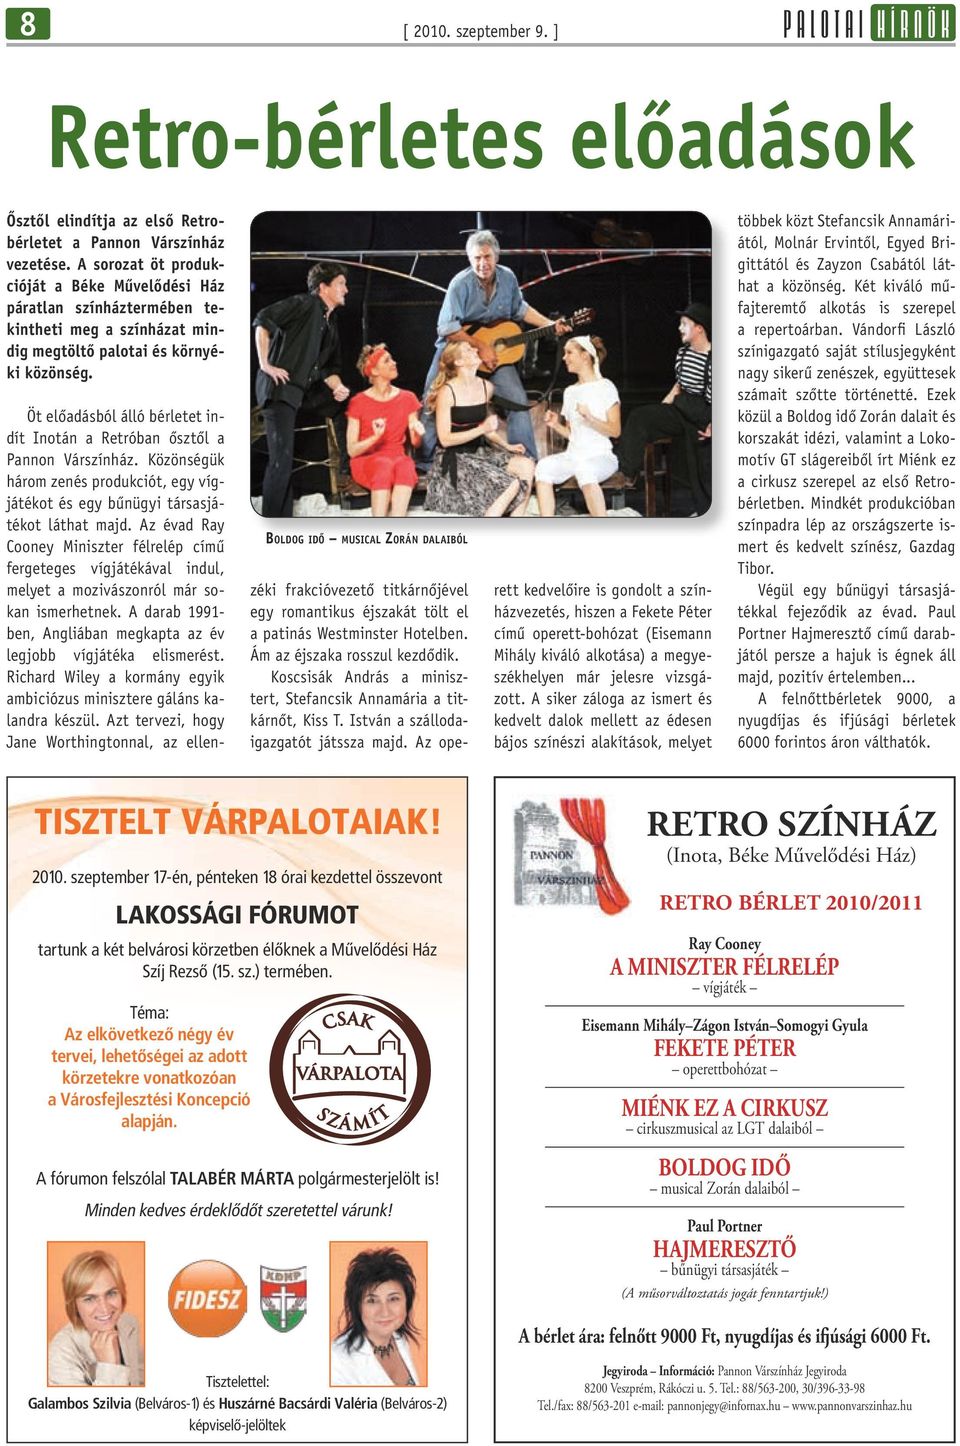 Boldog idõ musical Zorán dalaiból Öt előadásból álló bérletet indít Inotán a Retróban õsztõl a Pannon Várszínház.